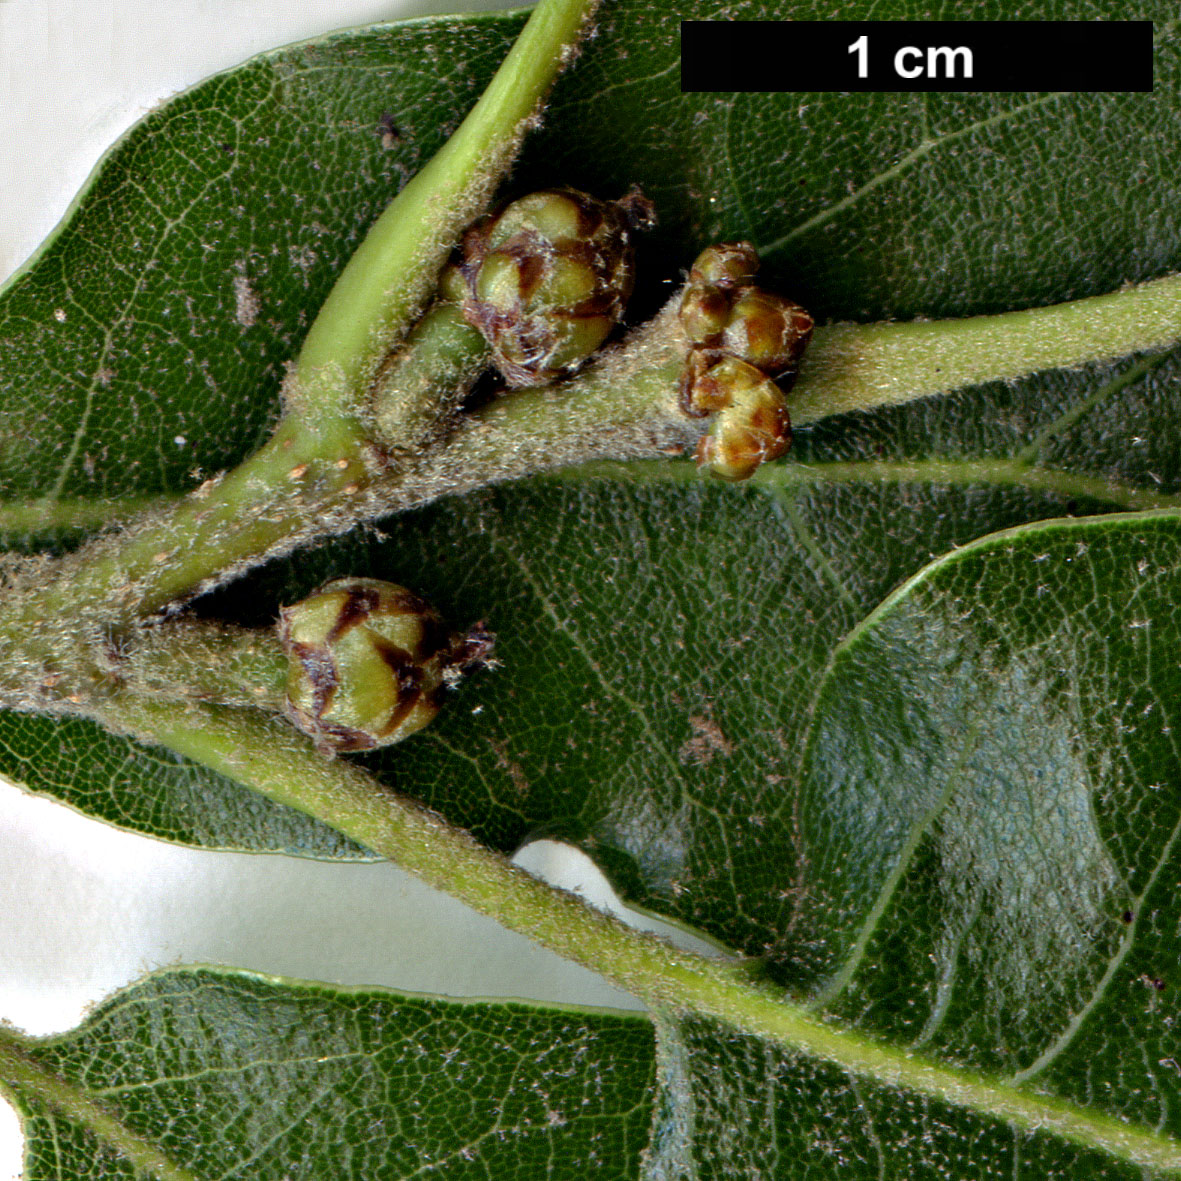 High resolution image: Family: Fagaceae - Genus: Quercus - Taxon: furfuracea